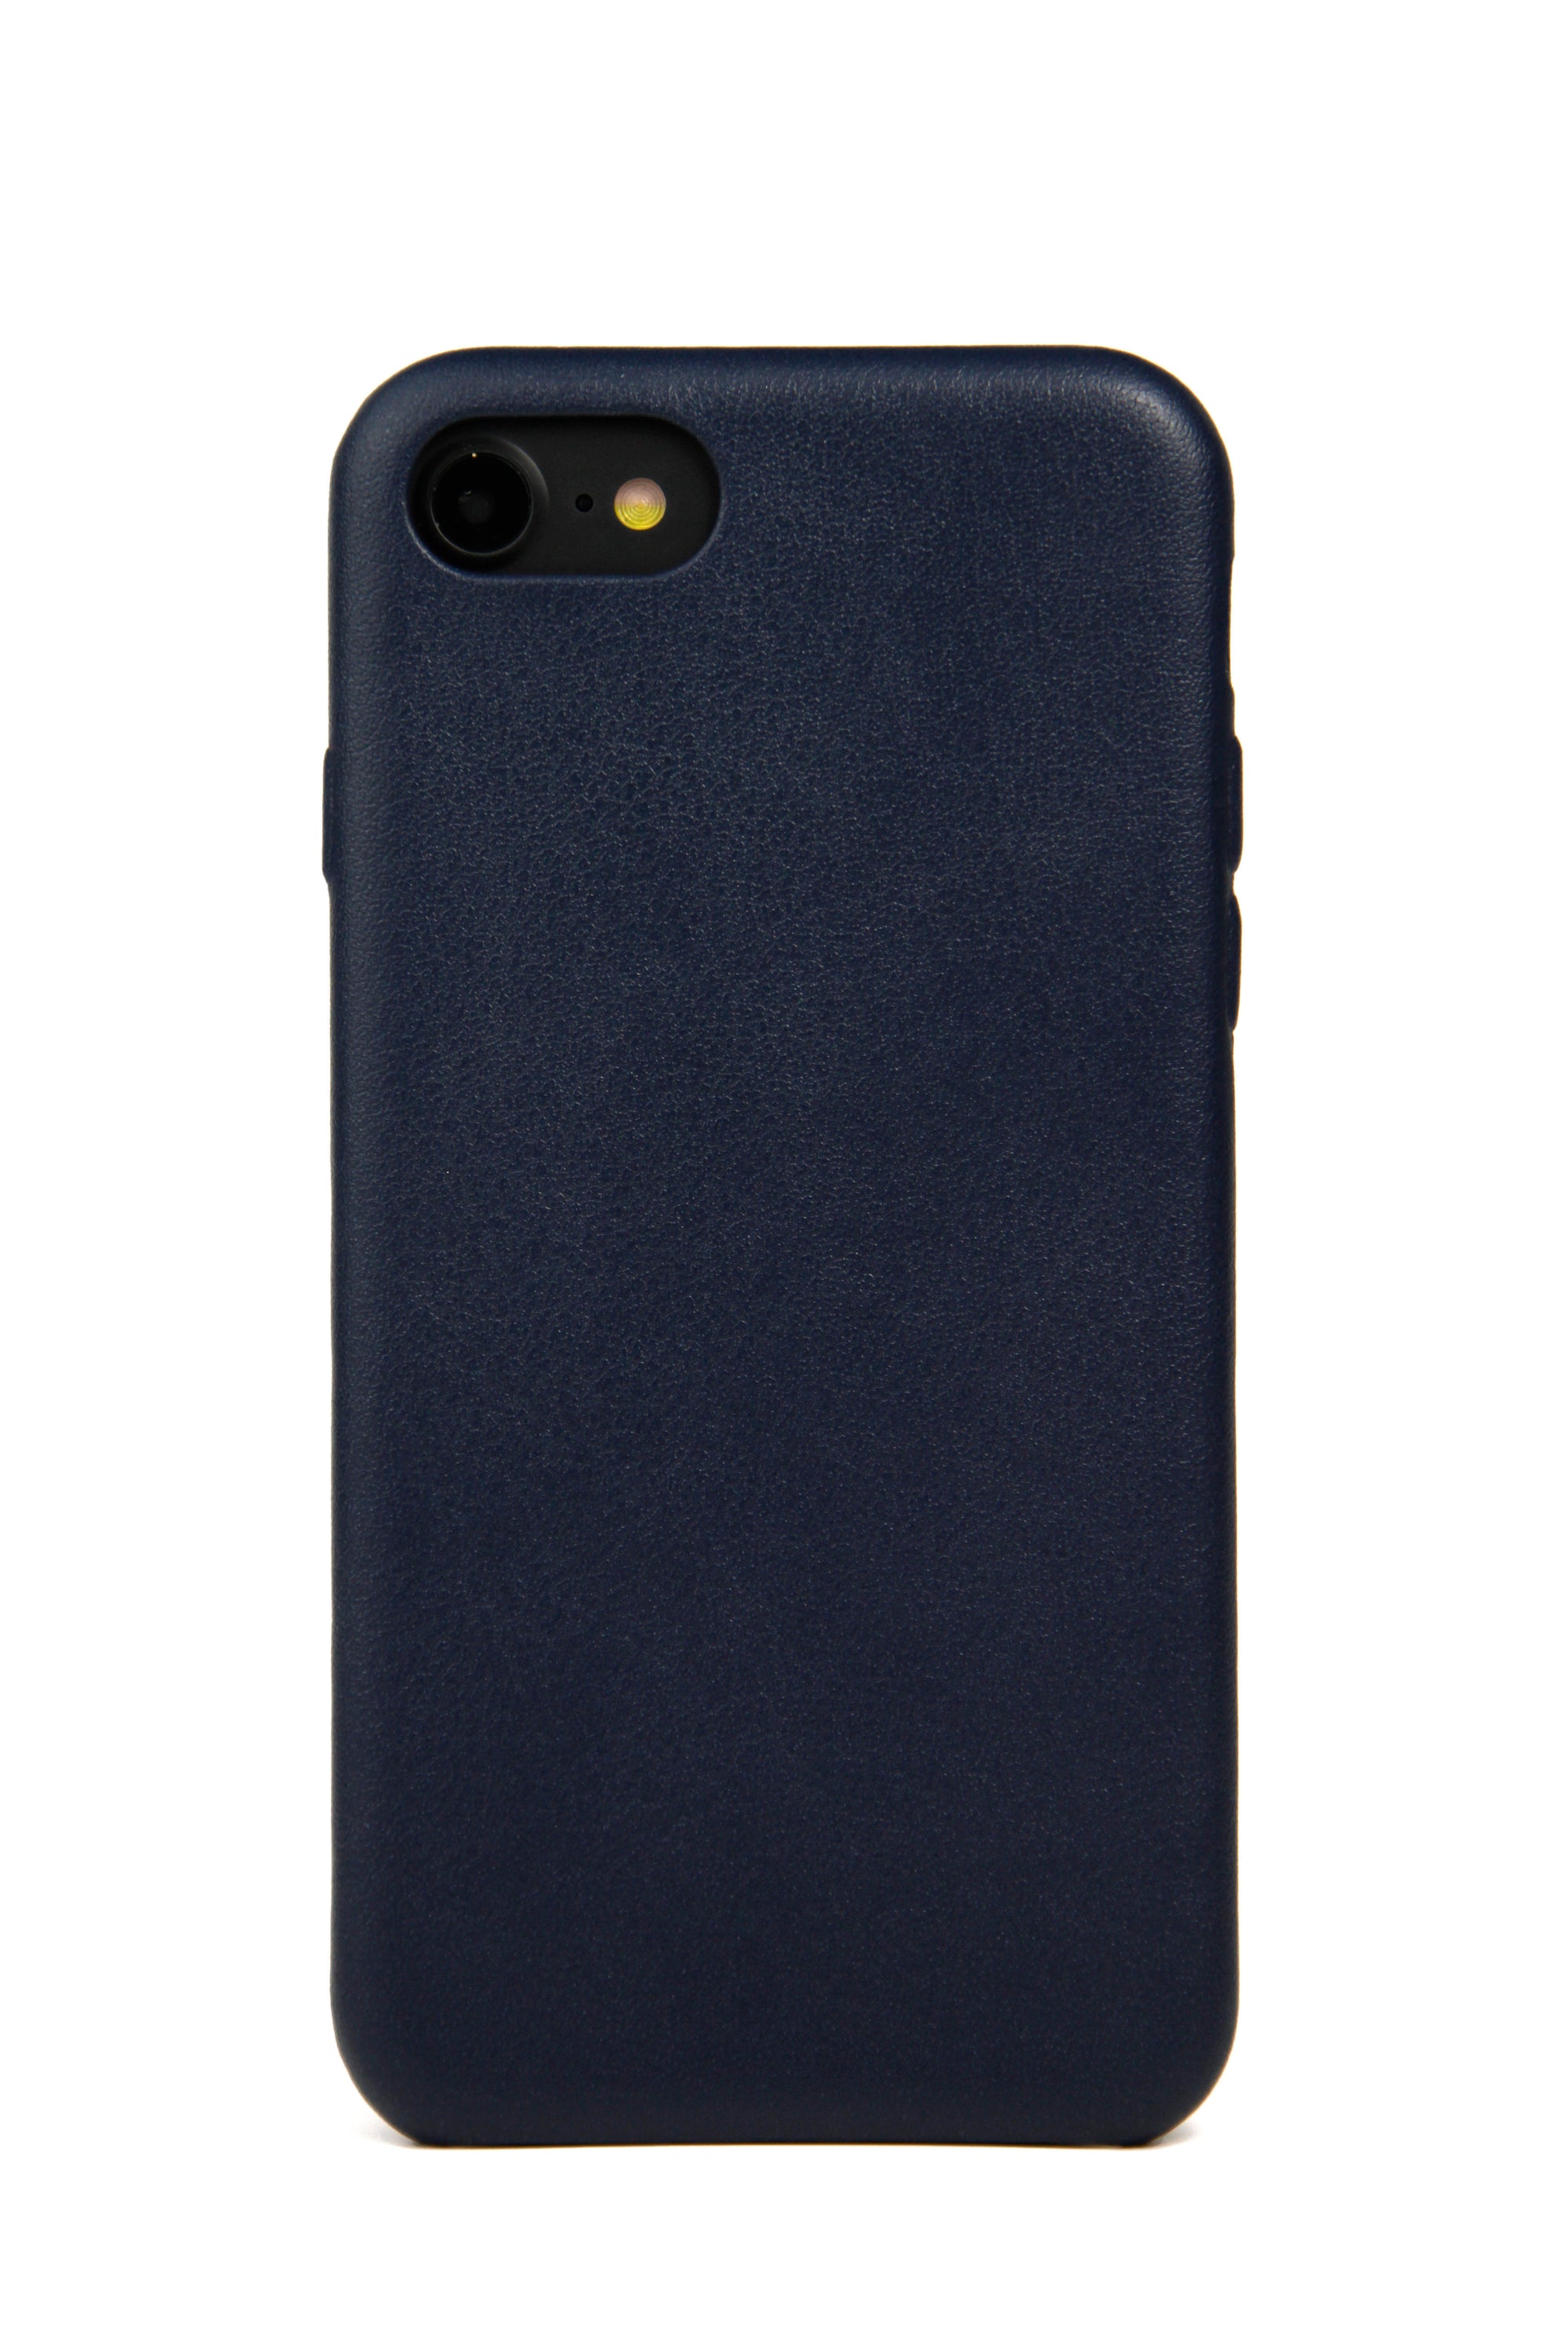 Coque pour iPhone 7/8, cuir bleu marine